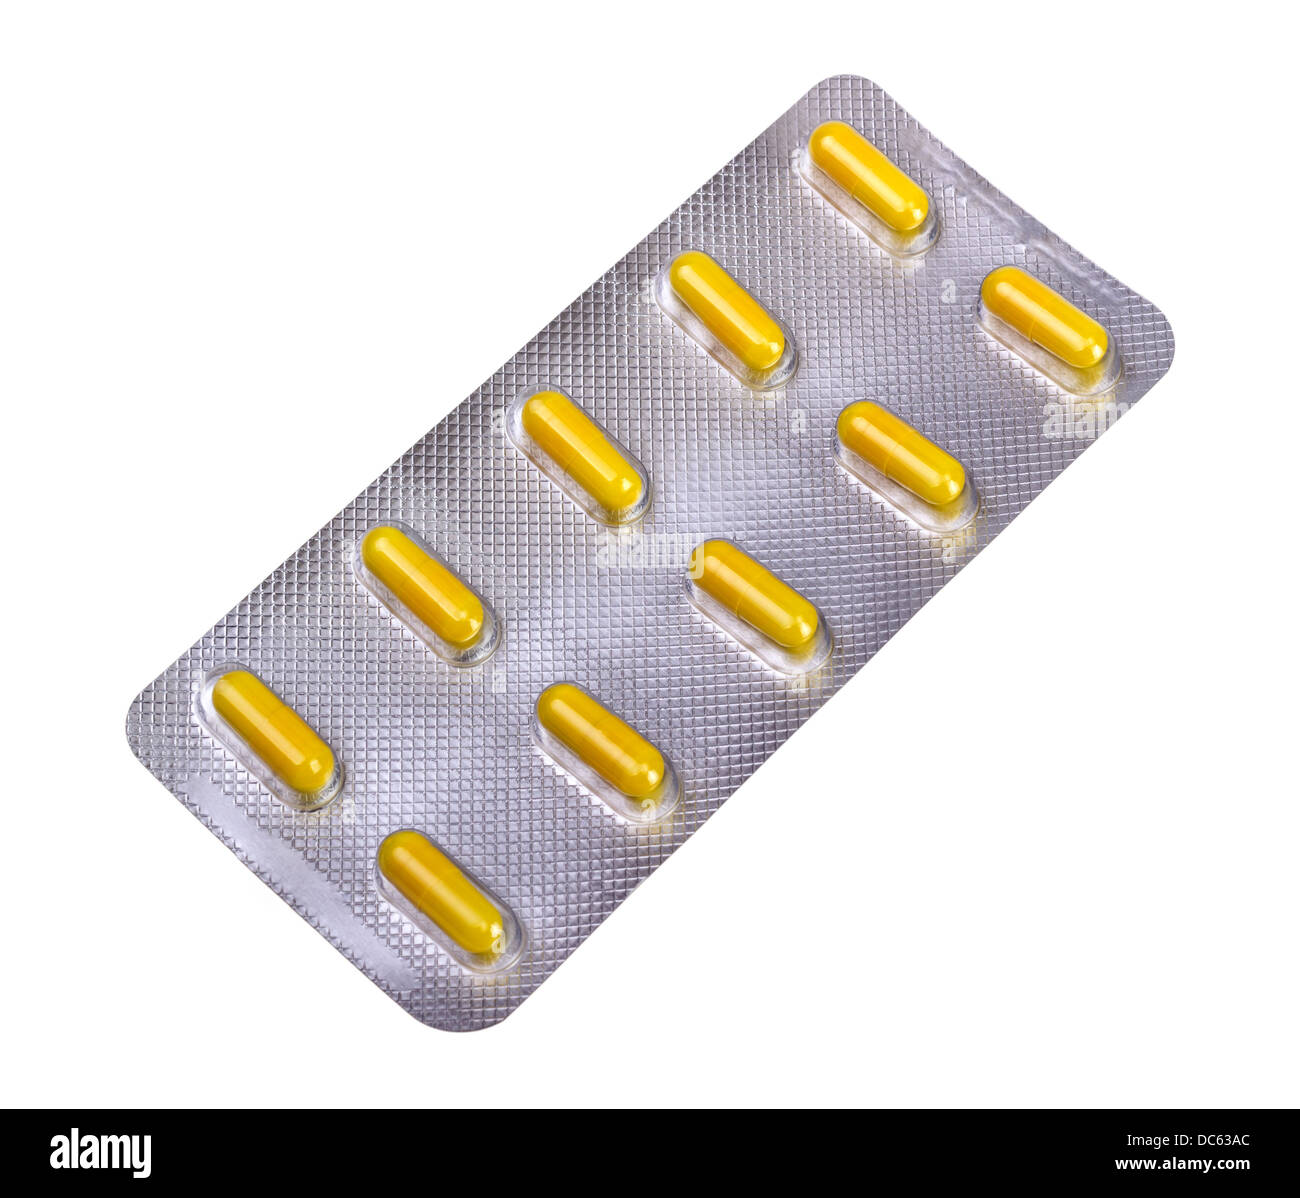 Les capsules de médicaments conditionnés dans des blisters Banque D'Images